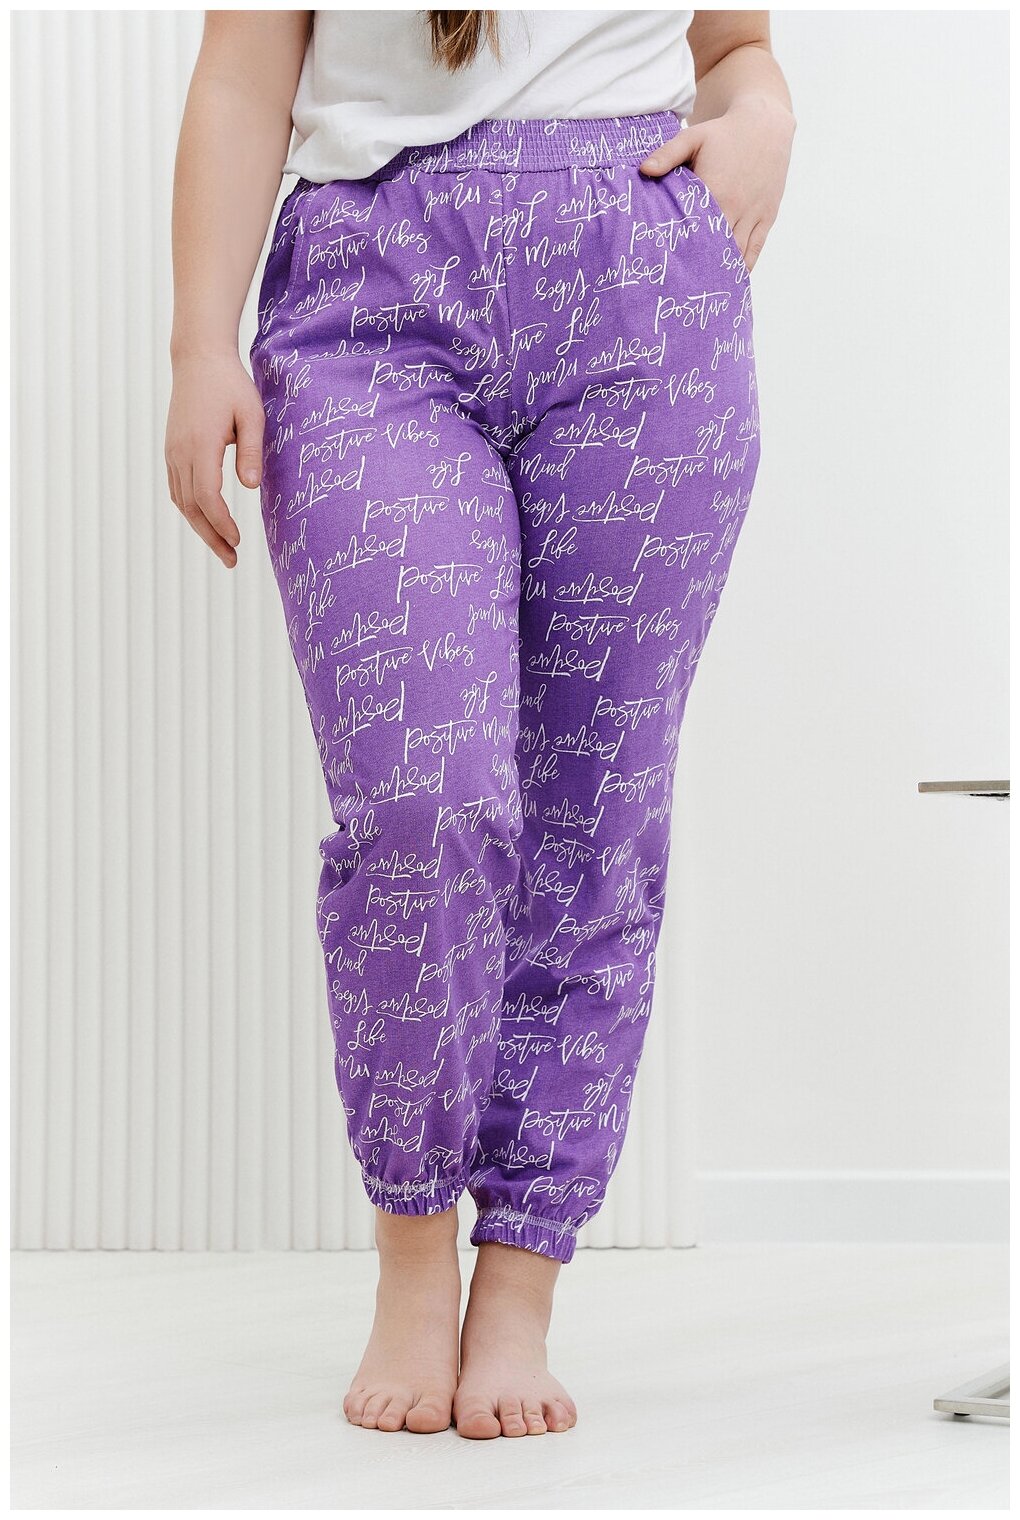 Брюки Натали, без рукава, пояс на резинке, карманы, размер 54, фиолетовый - фотография № 2